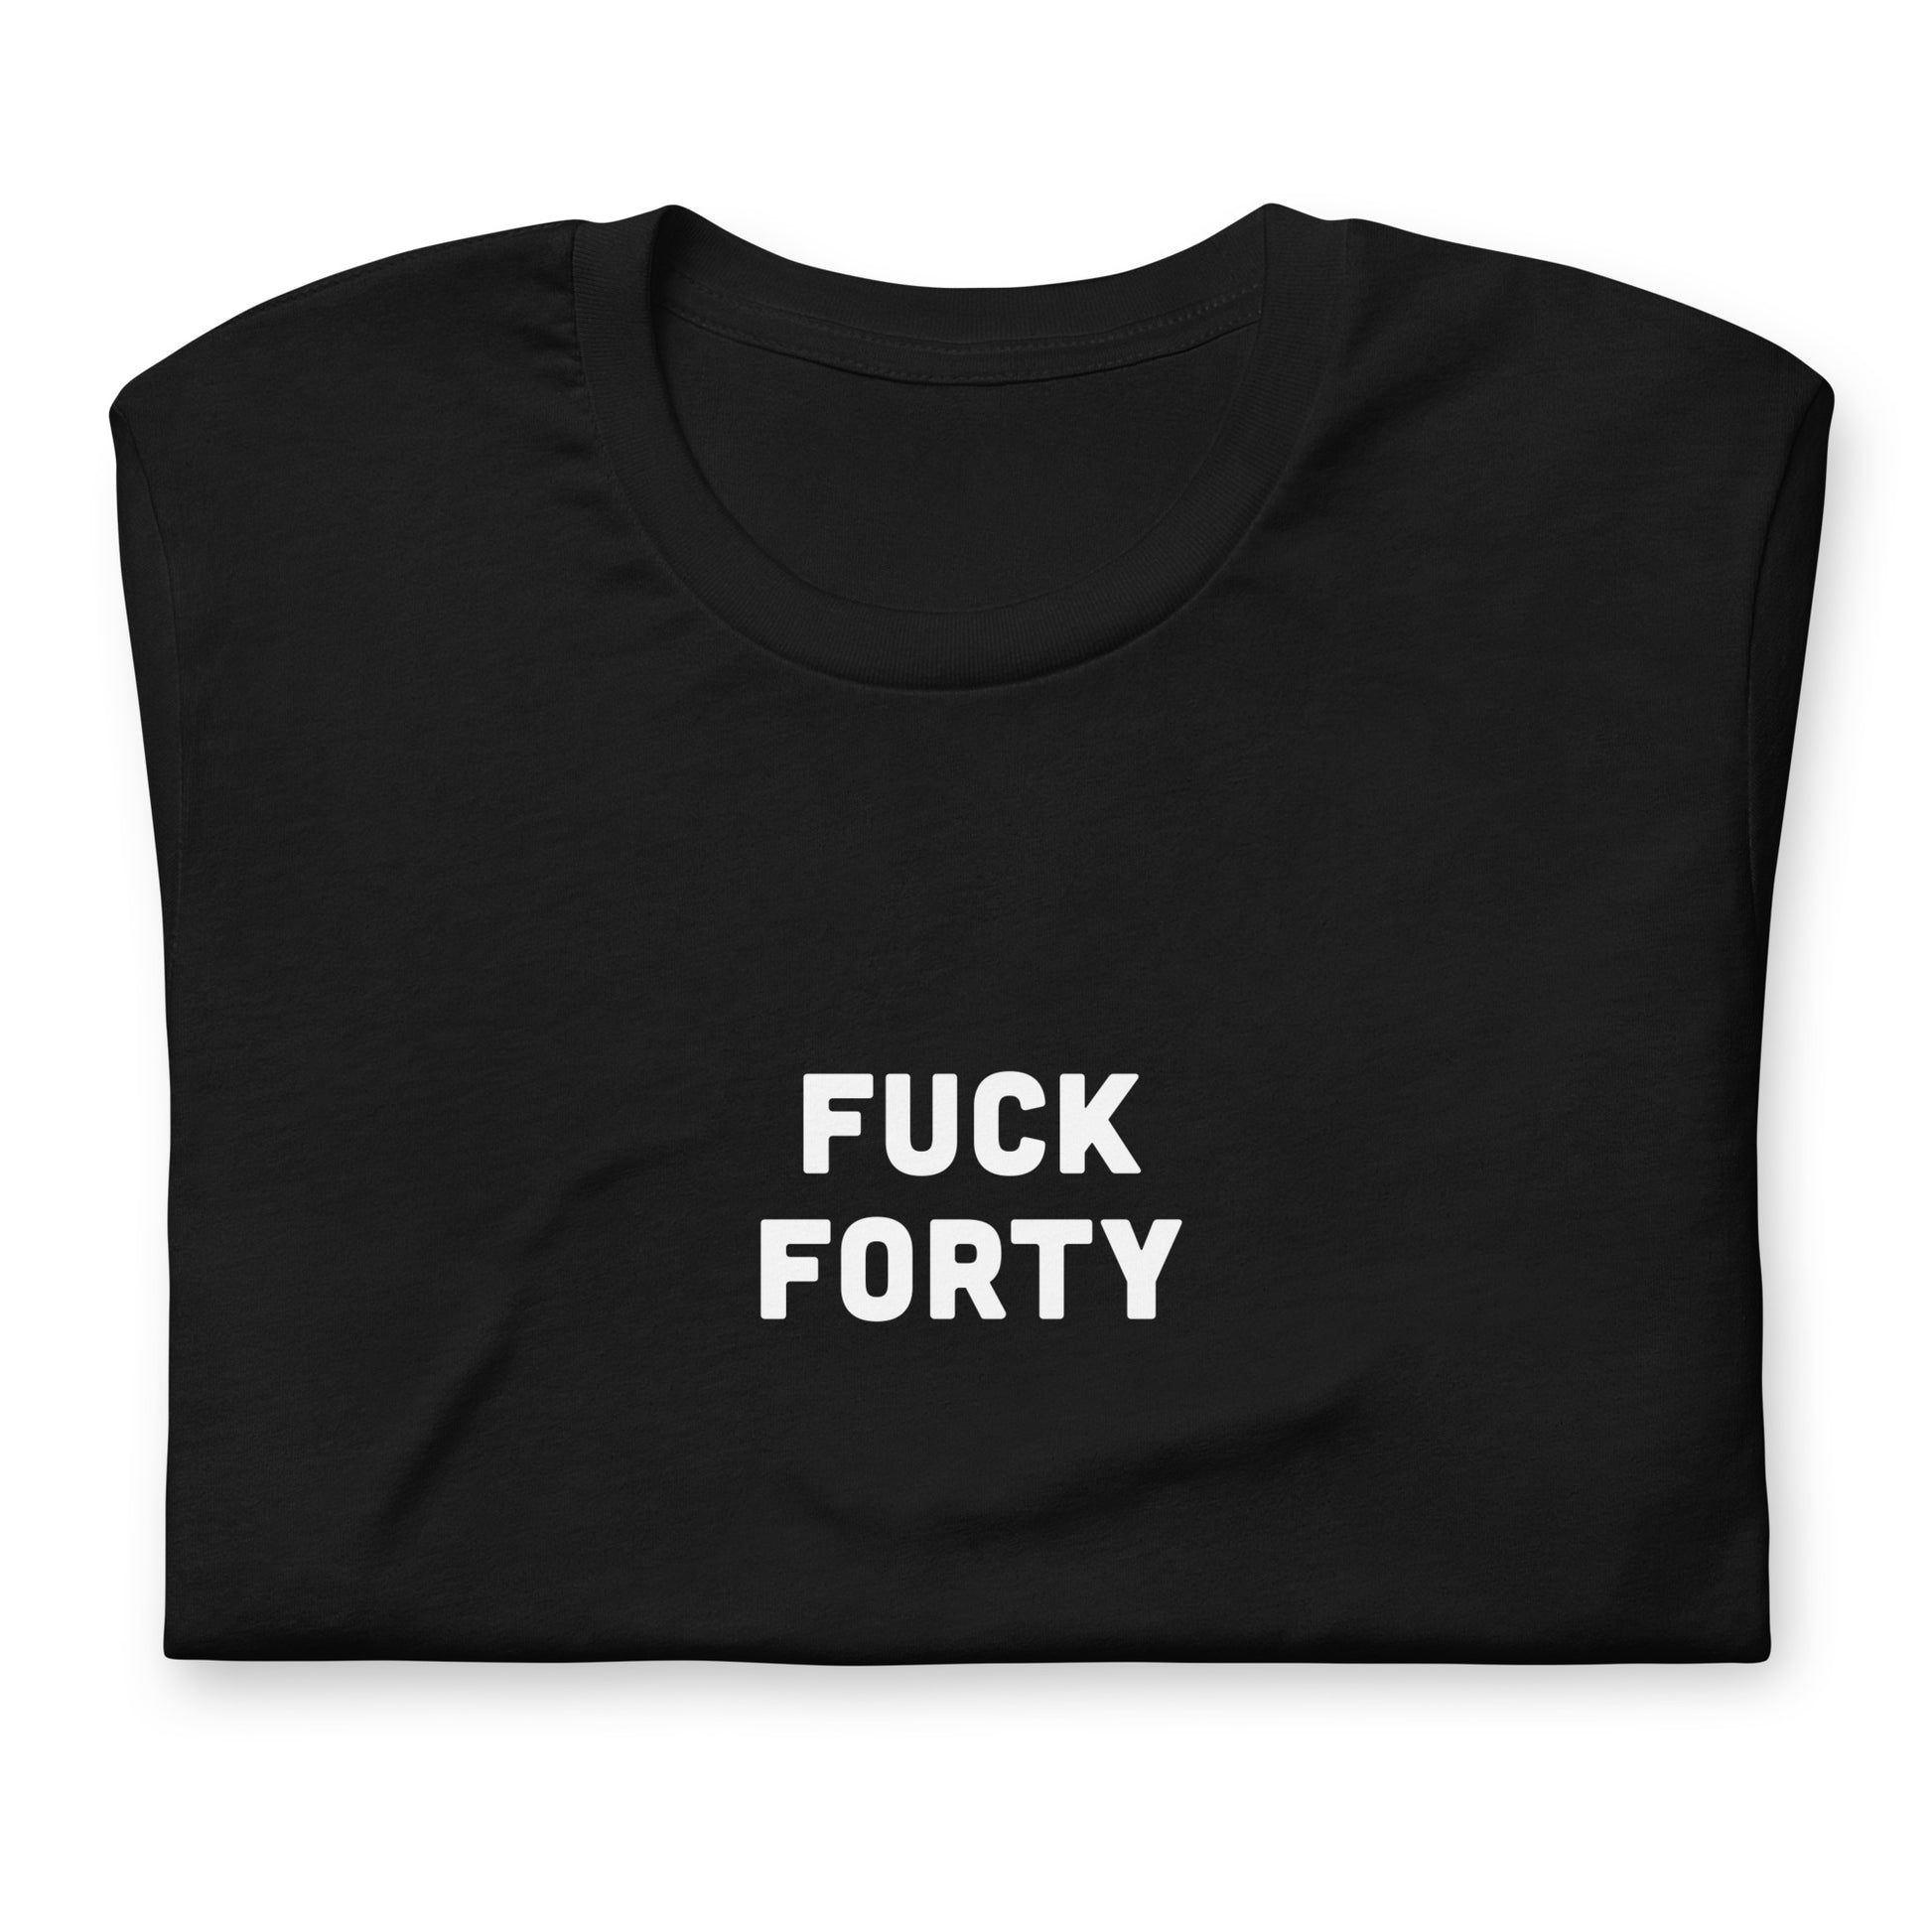 Fuck 40 T-Shirt Size M Color Black